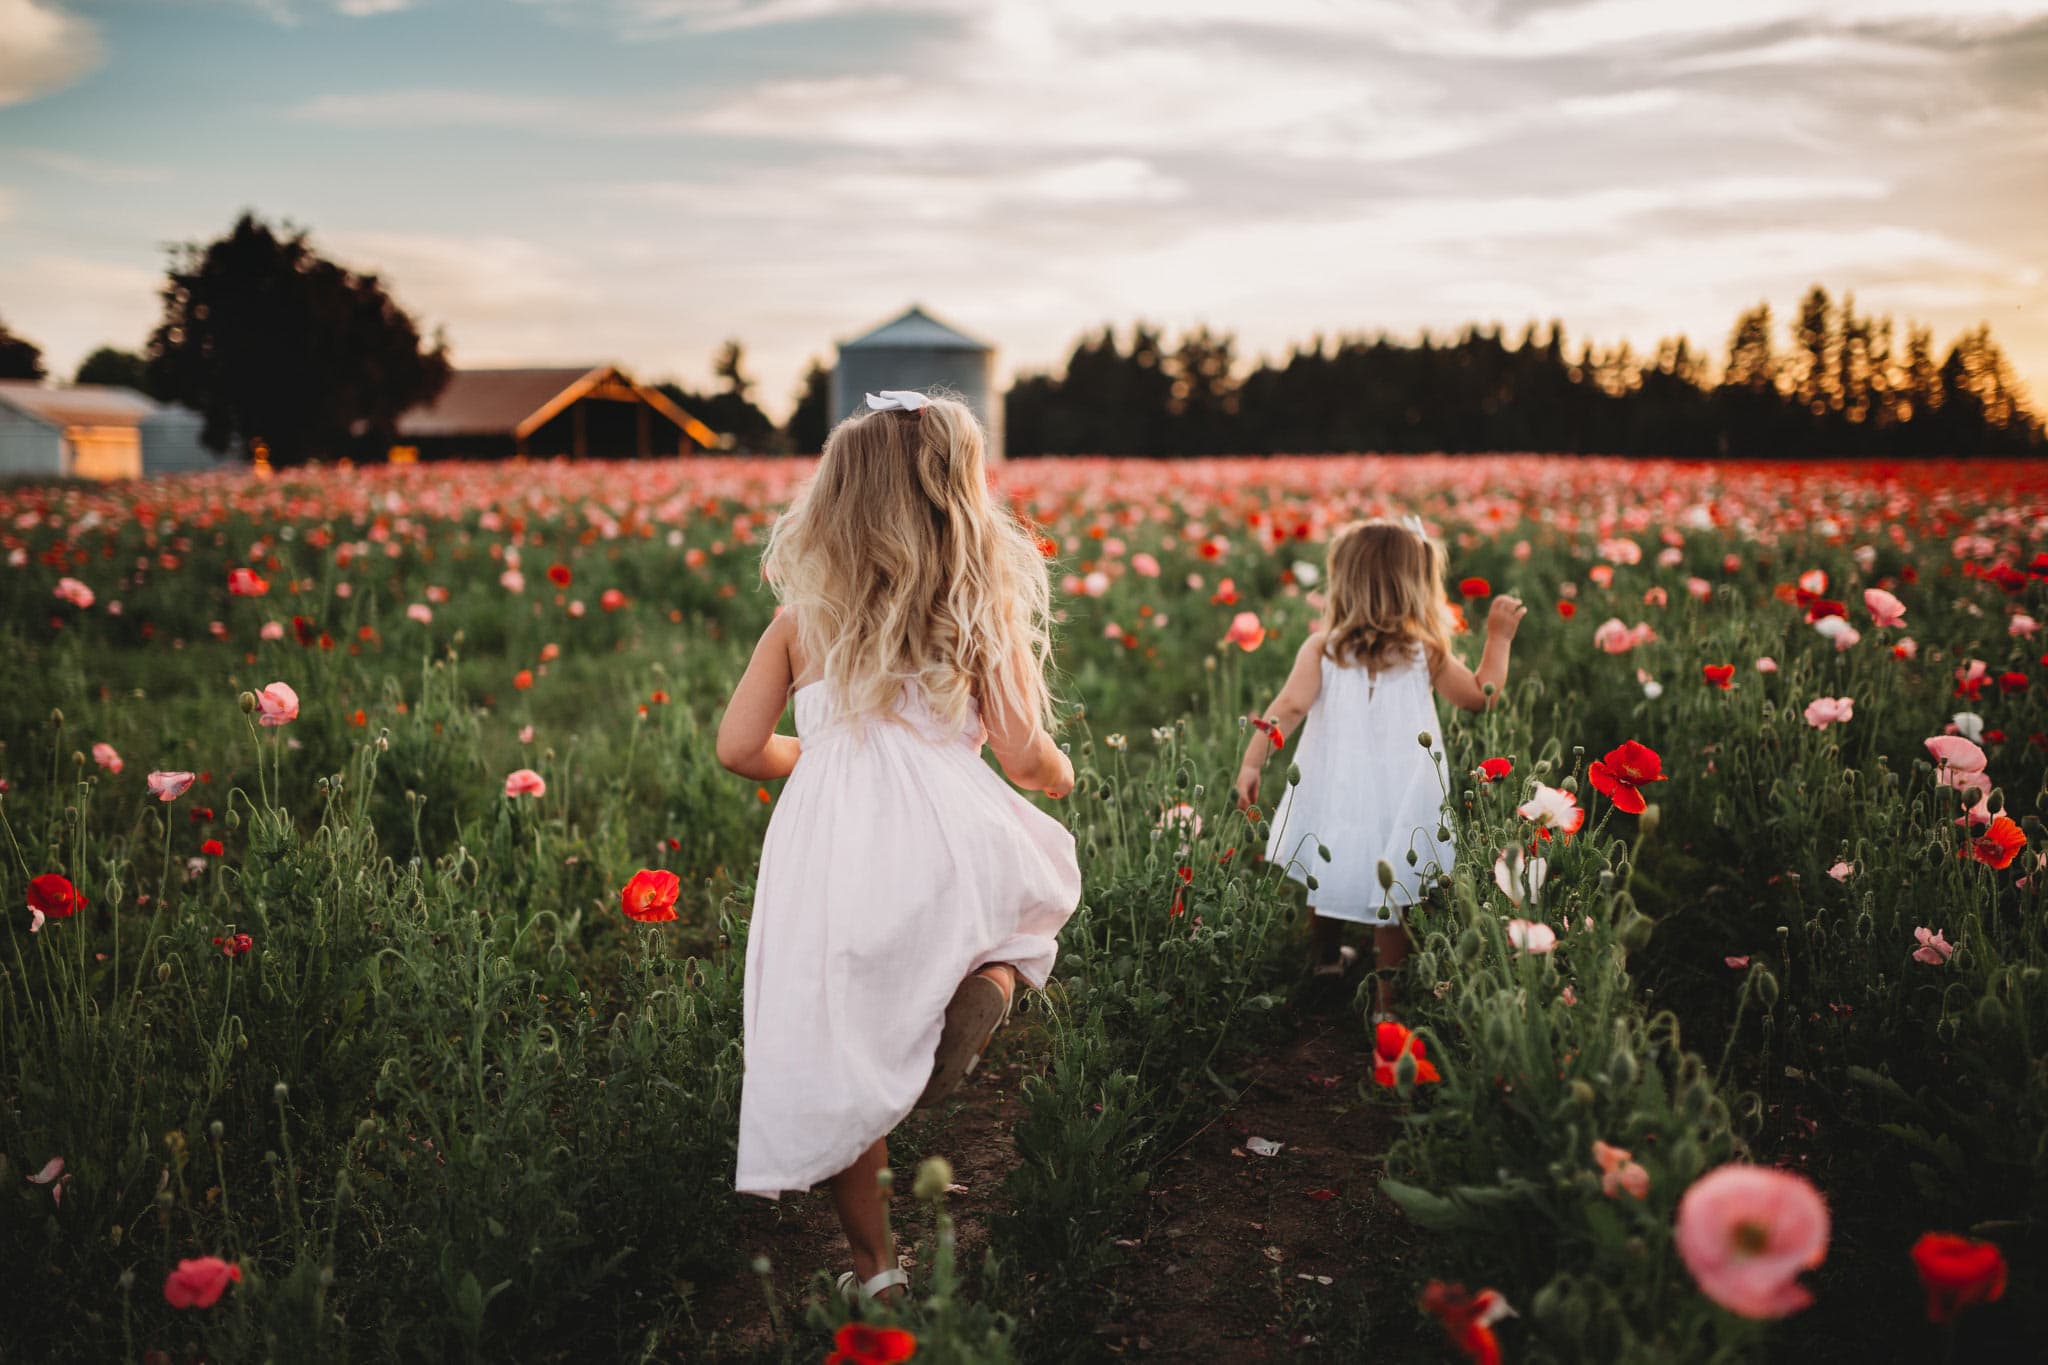 Little girls running in field of poppies in Oregon